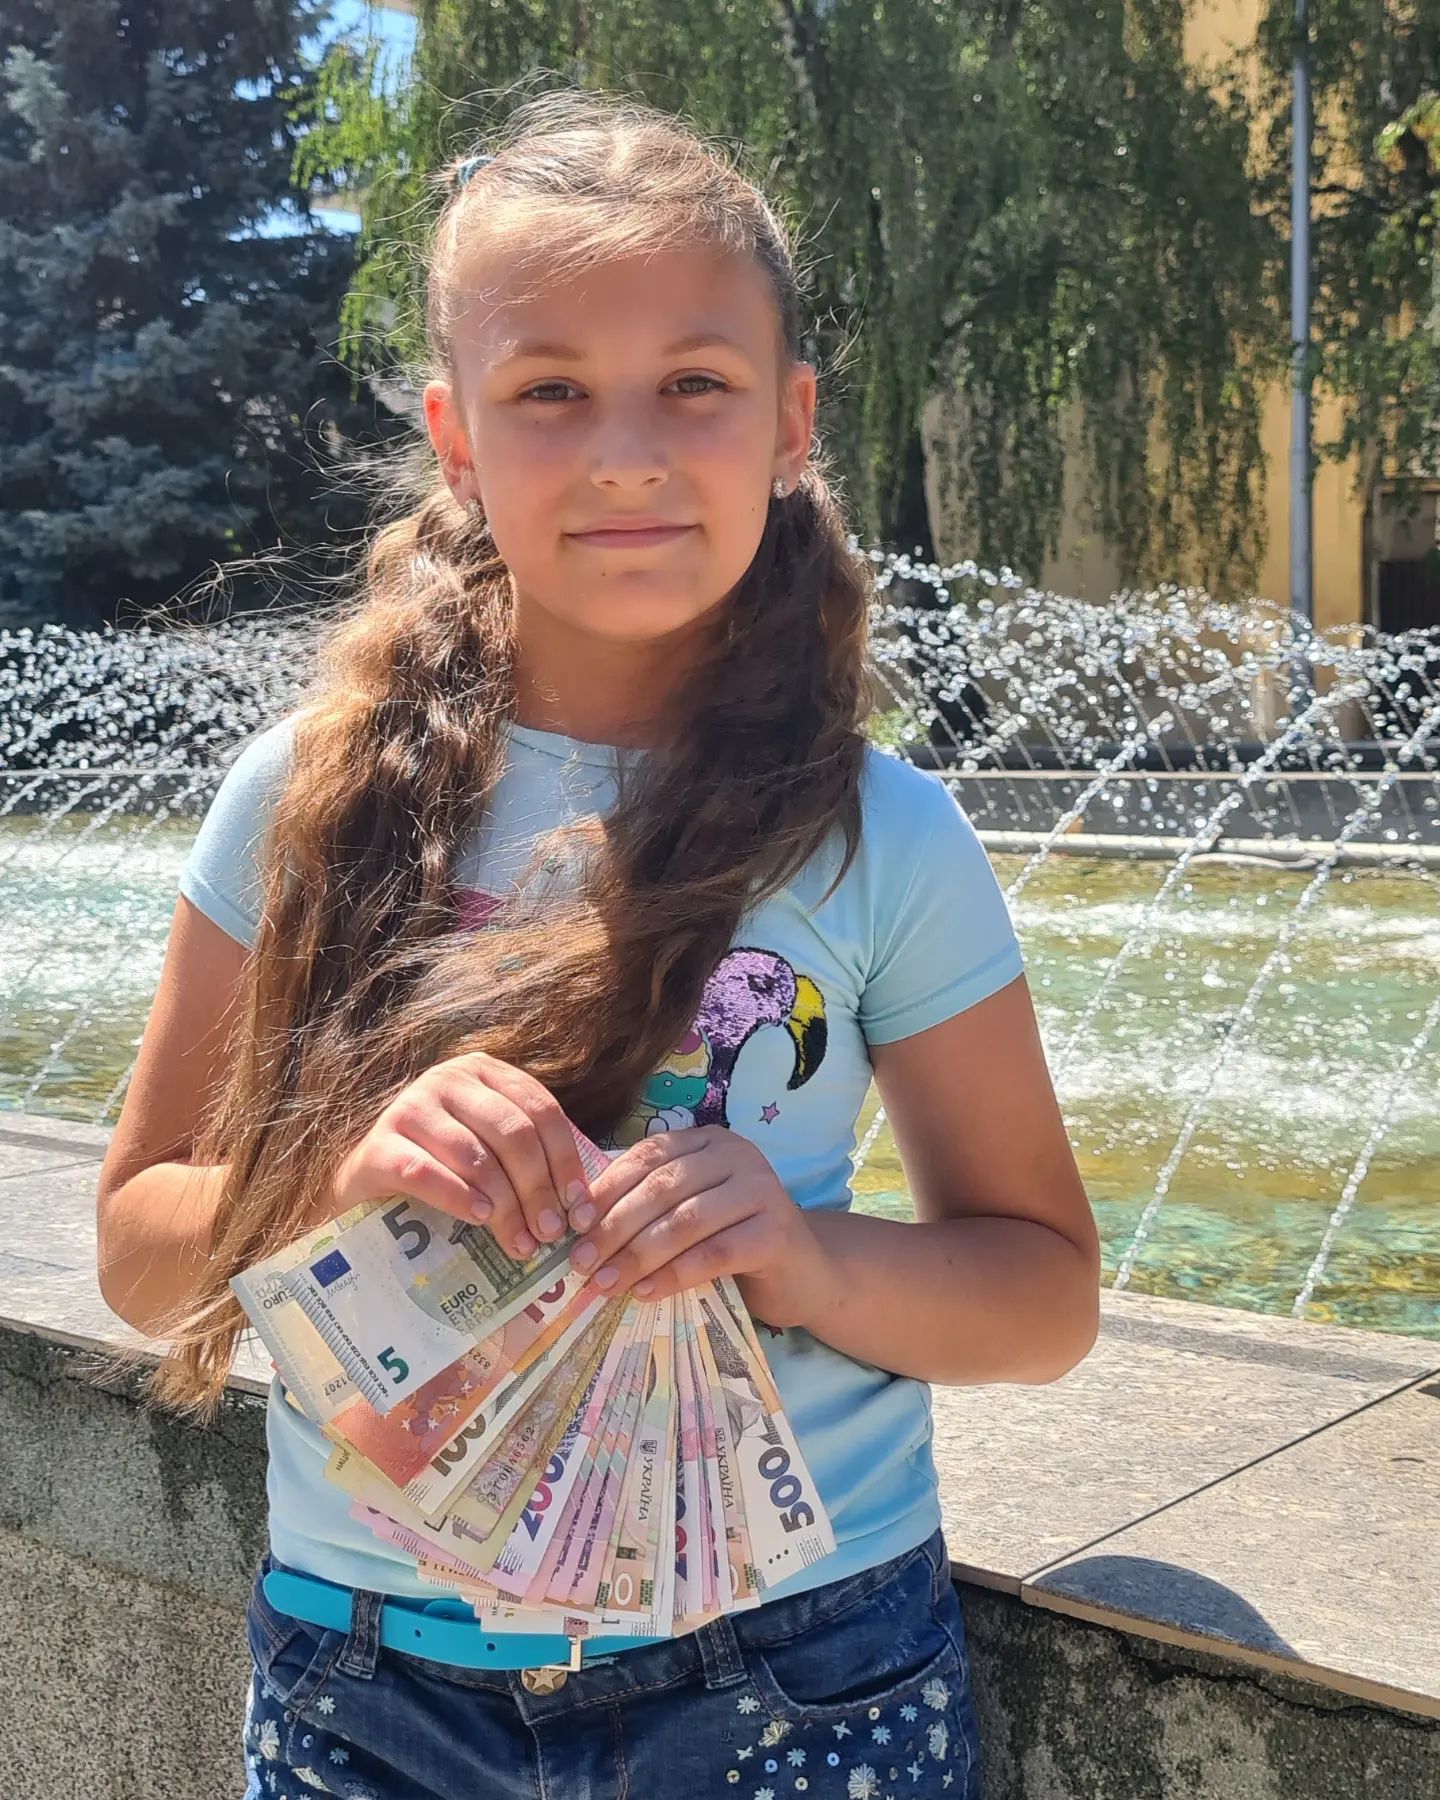 Дев’ятирічна Ліда із Закараття передала на допомогу ЗСУ 6000 гривень та 40 євро – усі подаровані їй на день народження кошти.

